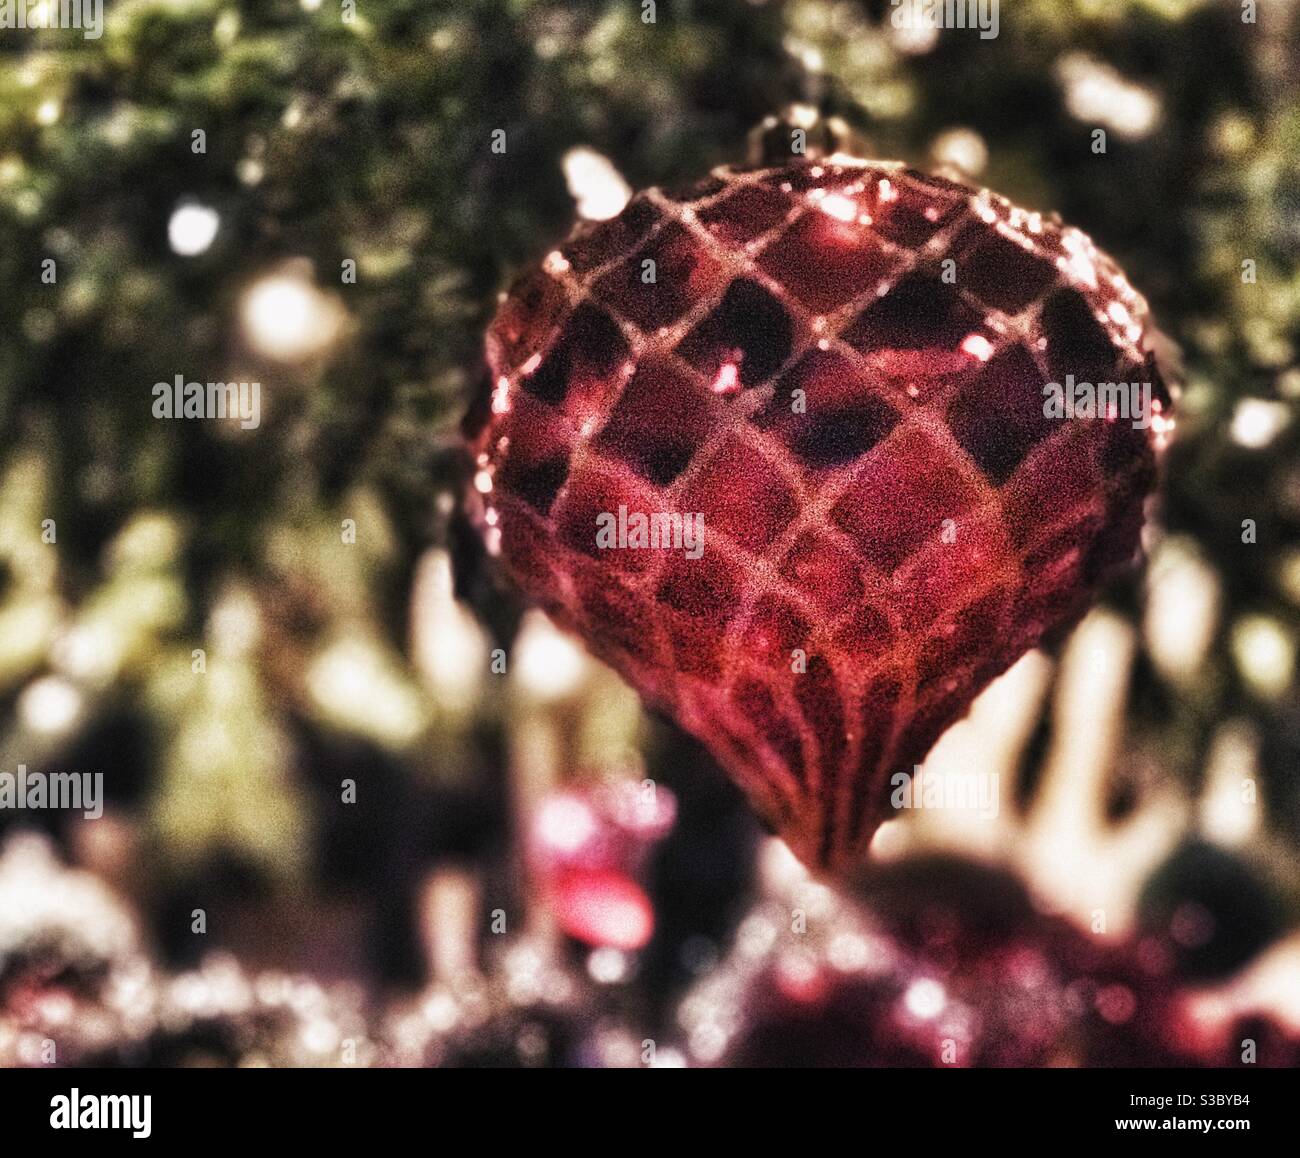 Heart shaped Christmas tree decorations Stock Photo